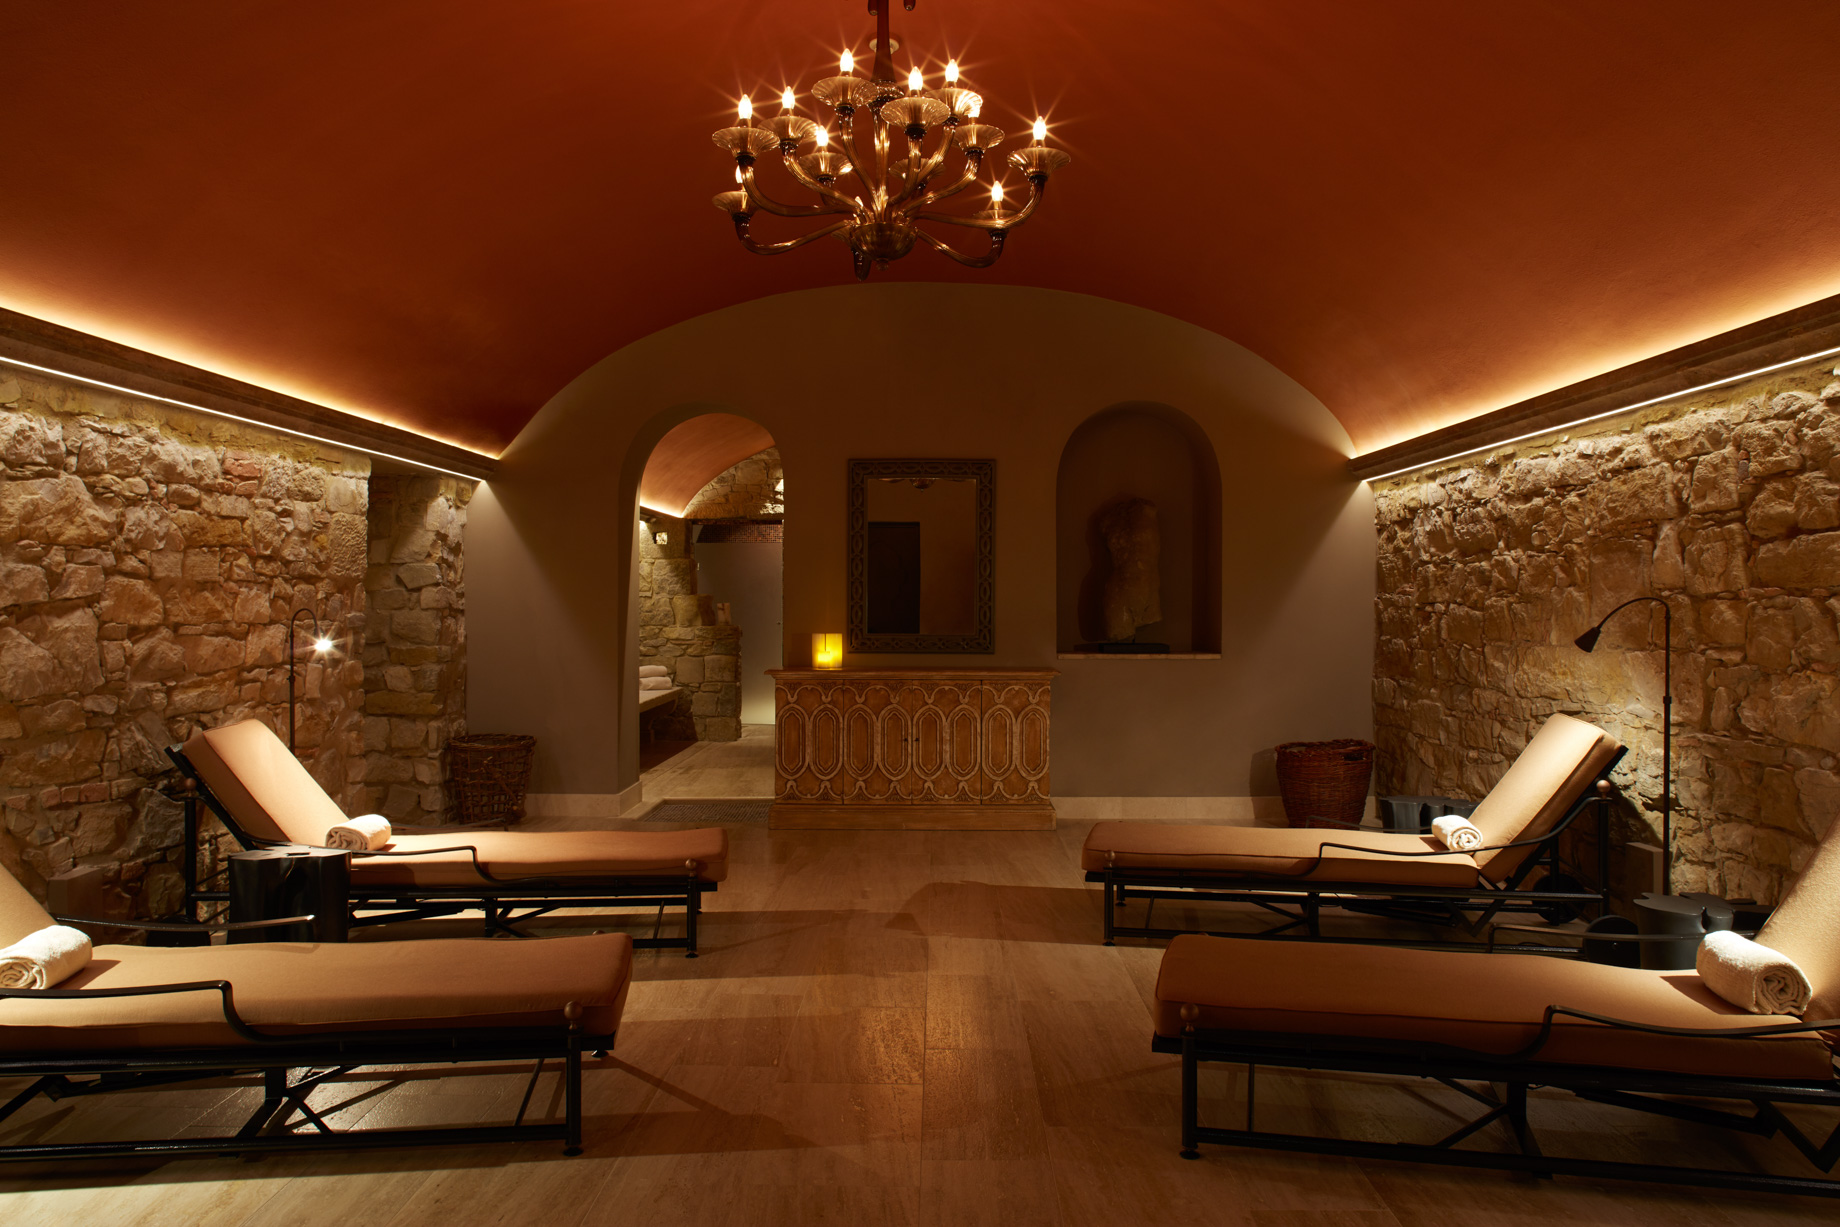 Castello di Casole, A Belmond Hotel, Tuscany – Casole d’Elsa, Italy – Spa